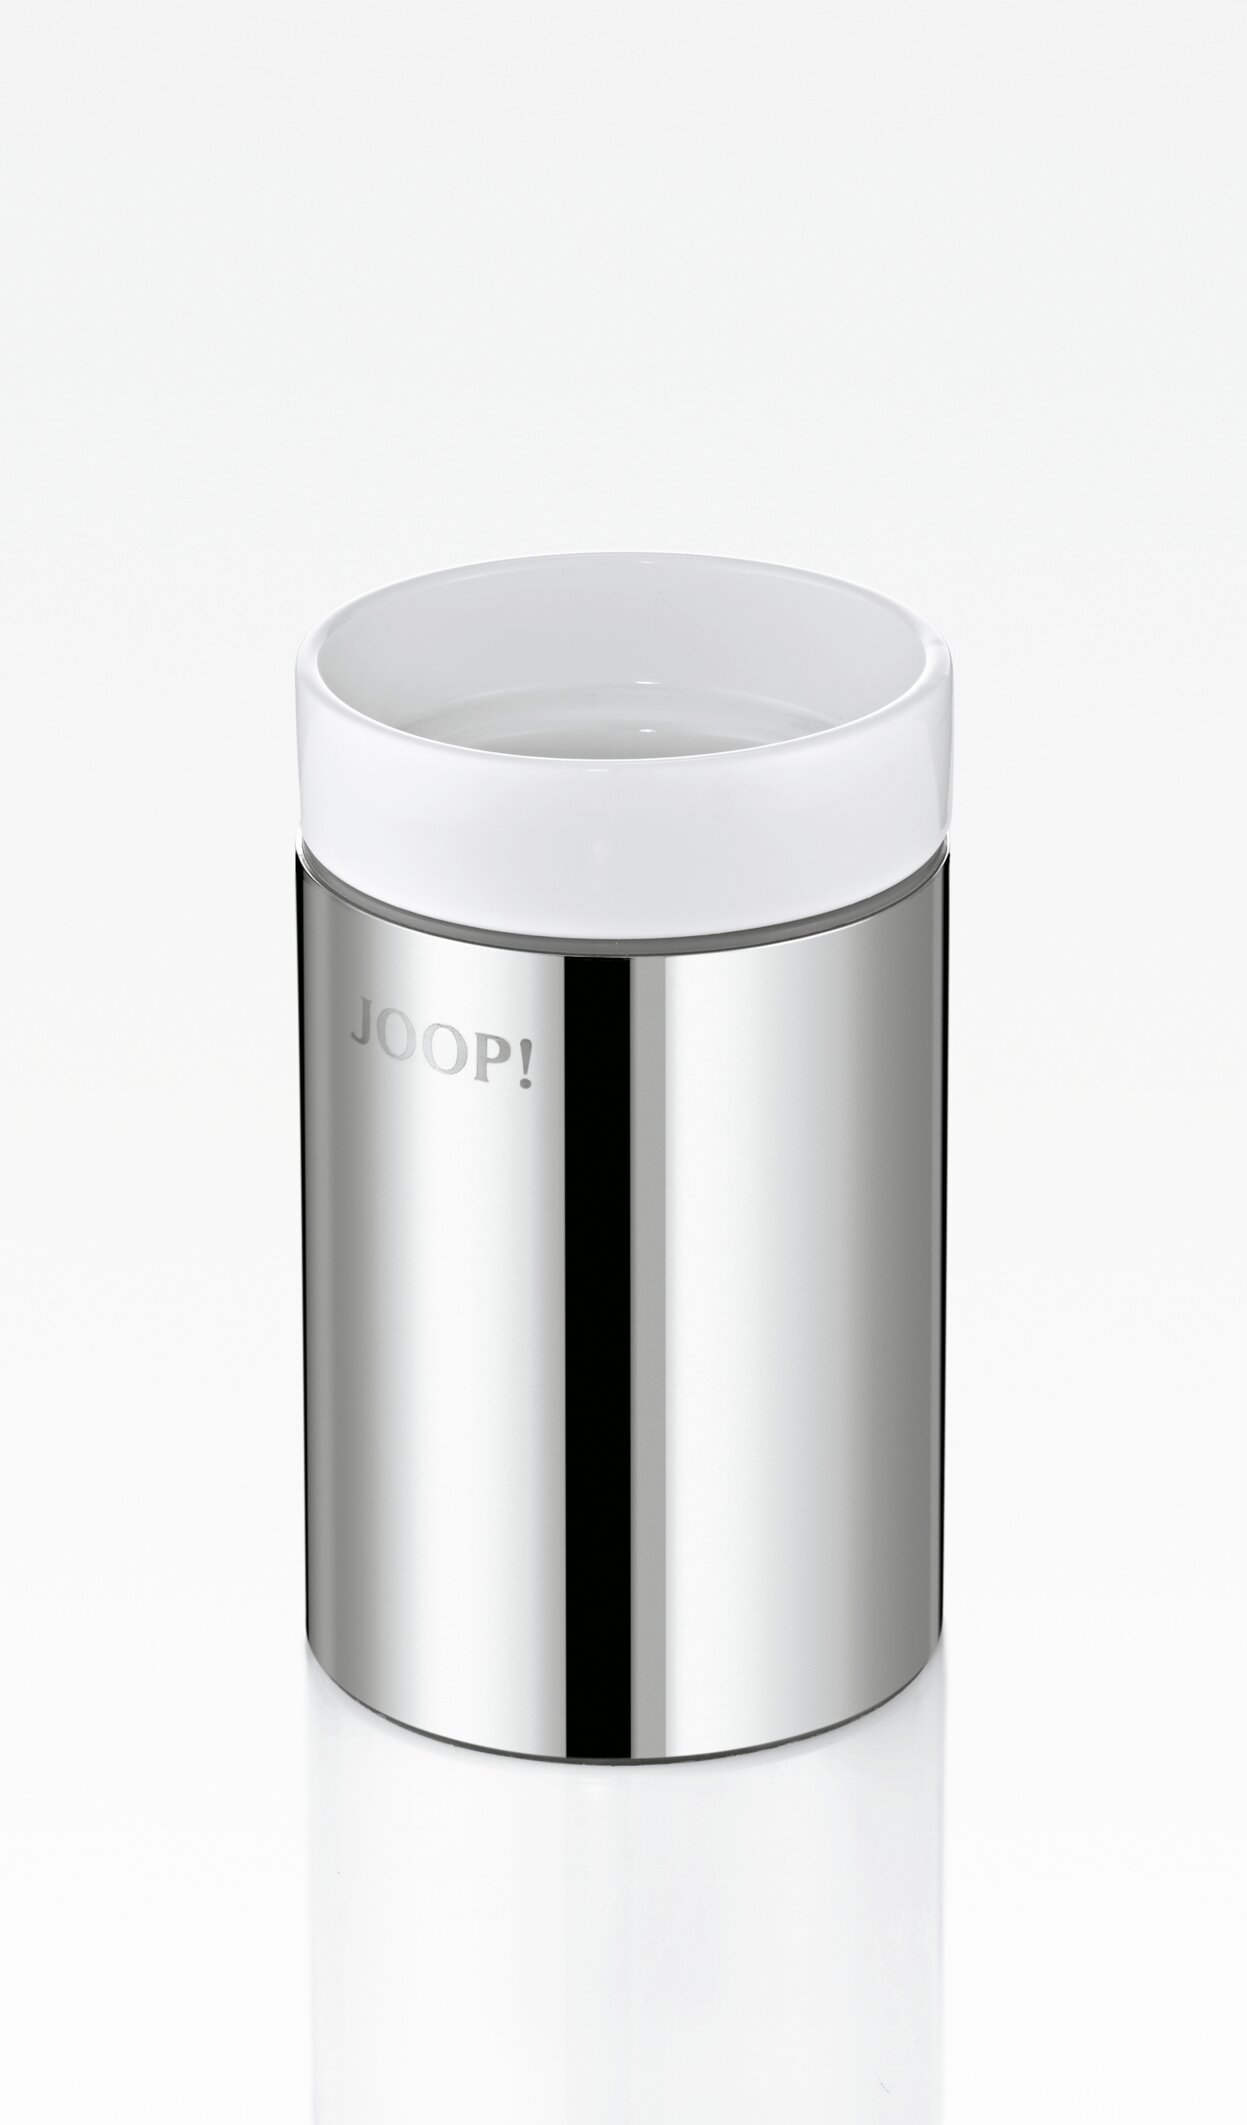 JOOP! Mundbecher - Chrom | Keramik  Weiß